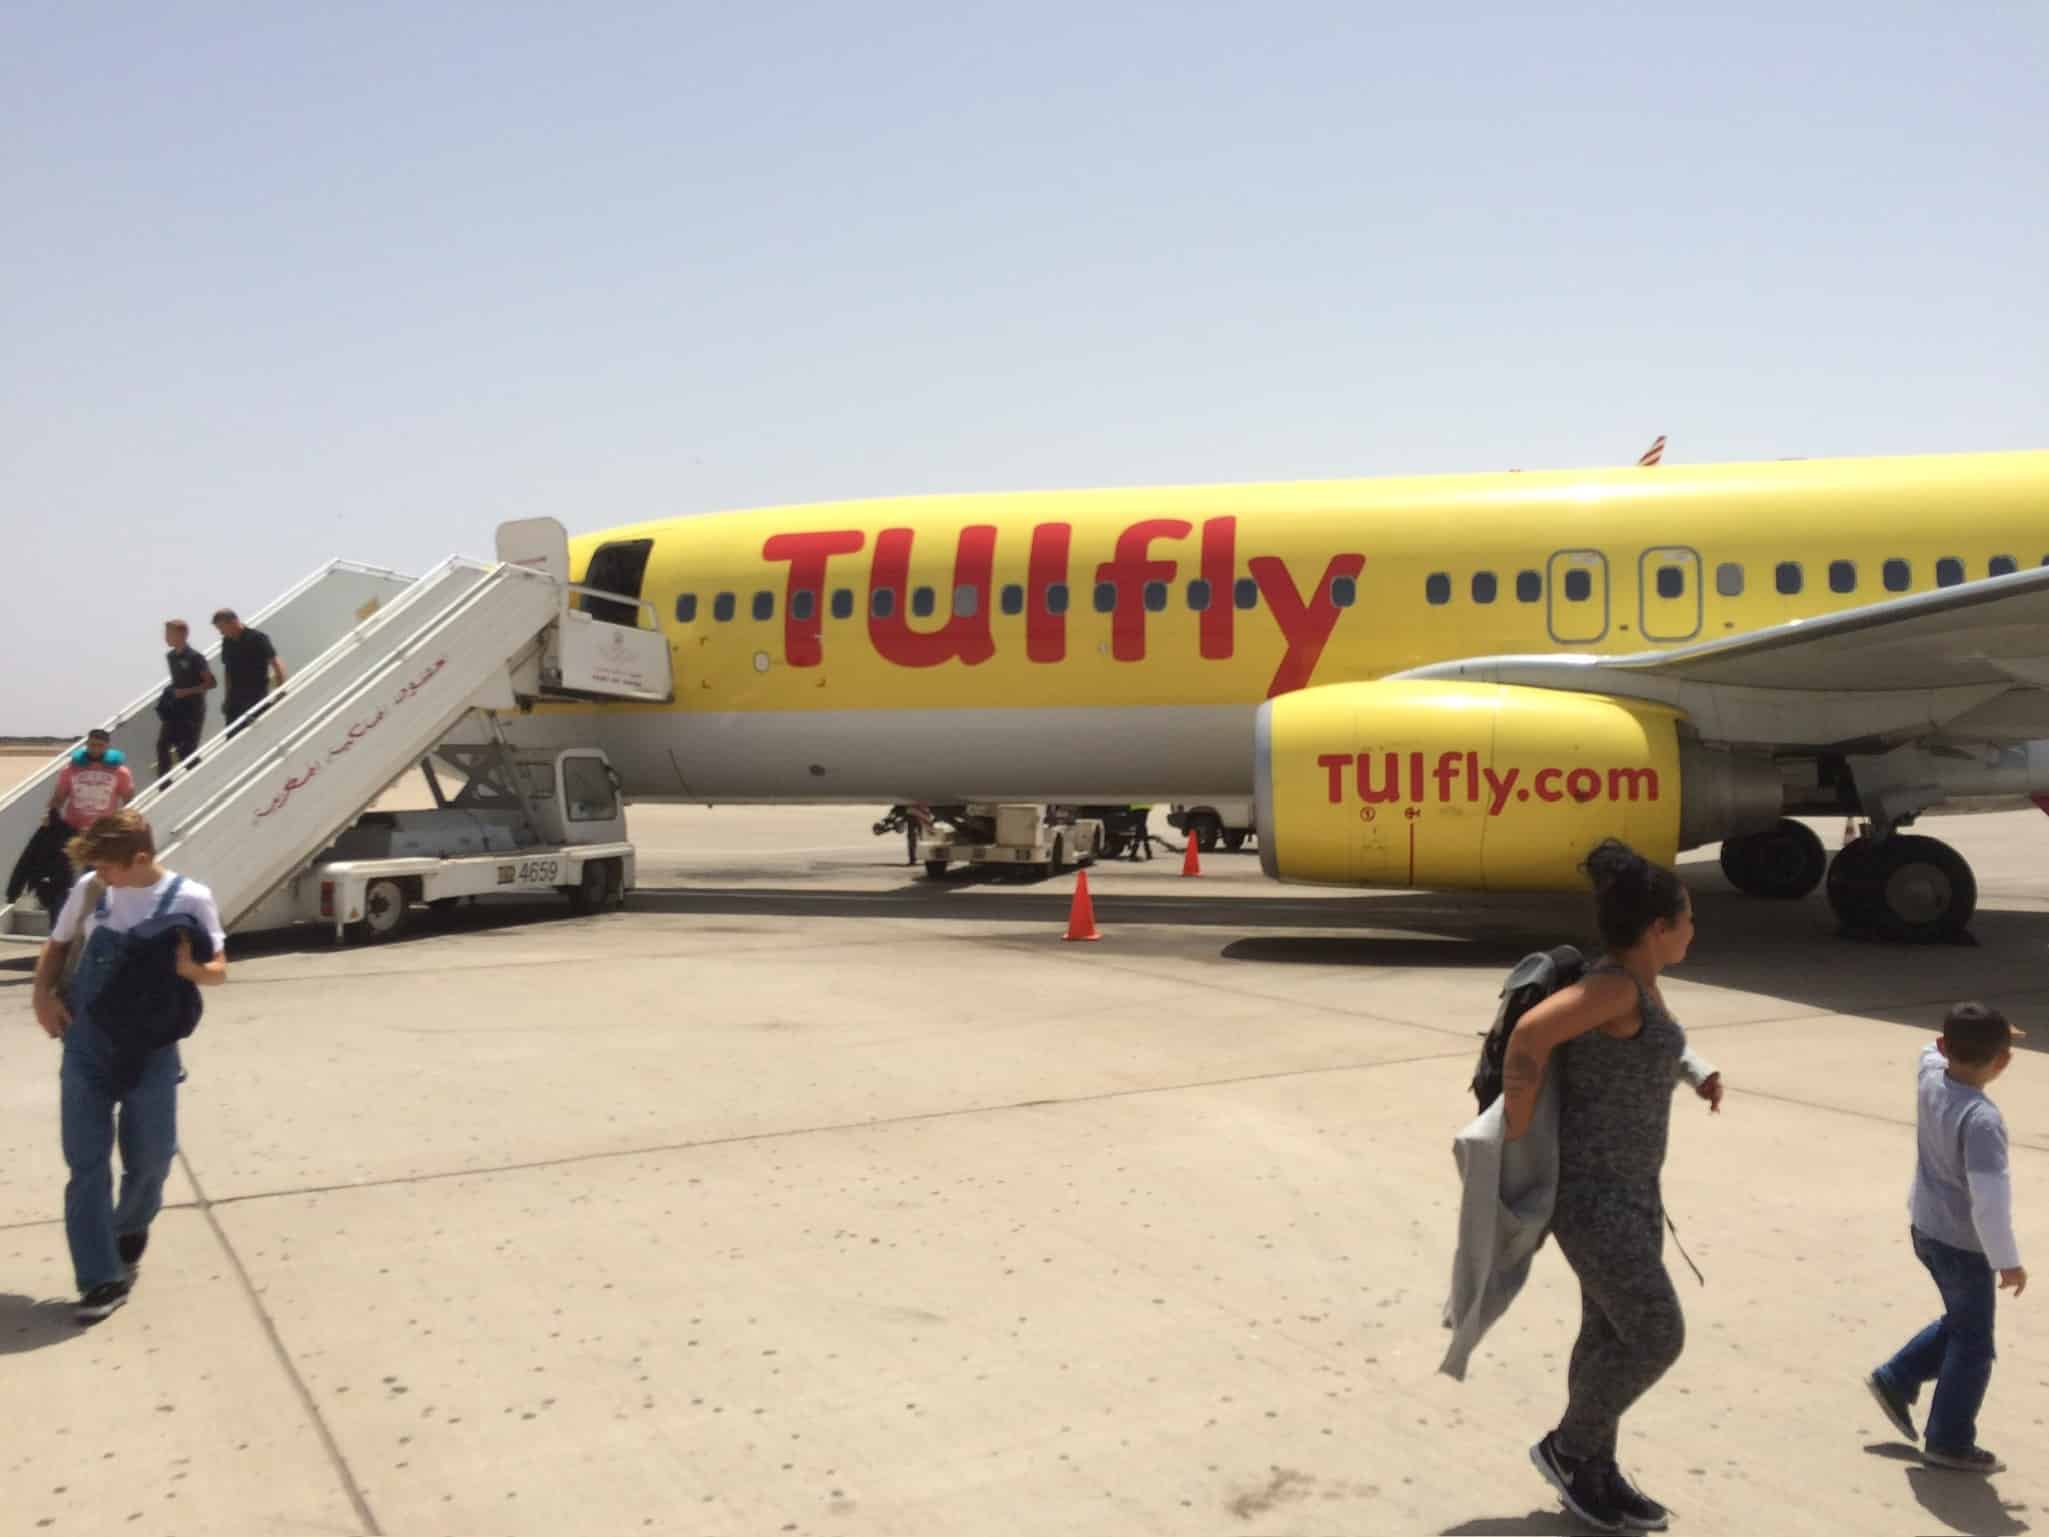 Flughafen Agadir, Marokko gelbe TUI fly Maschine mit Ausstieg auf dem Rollfeld